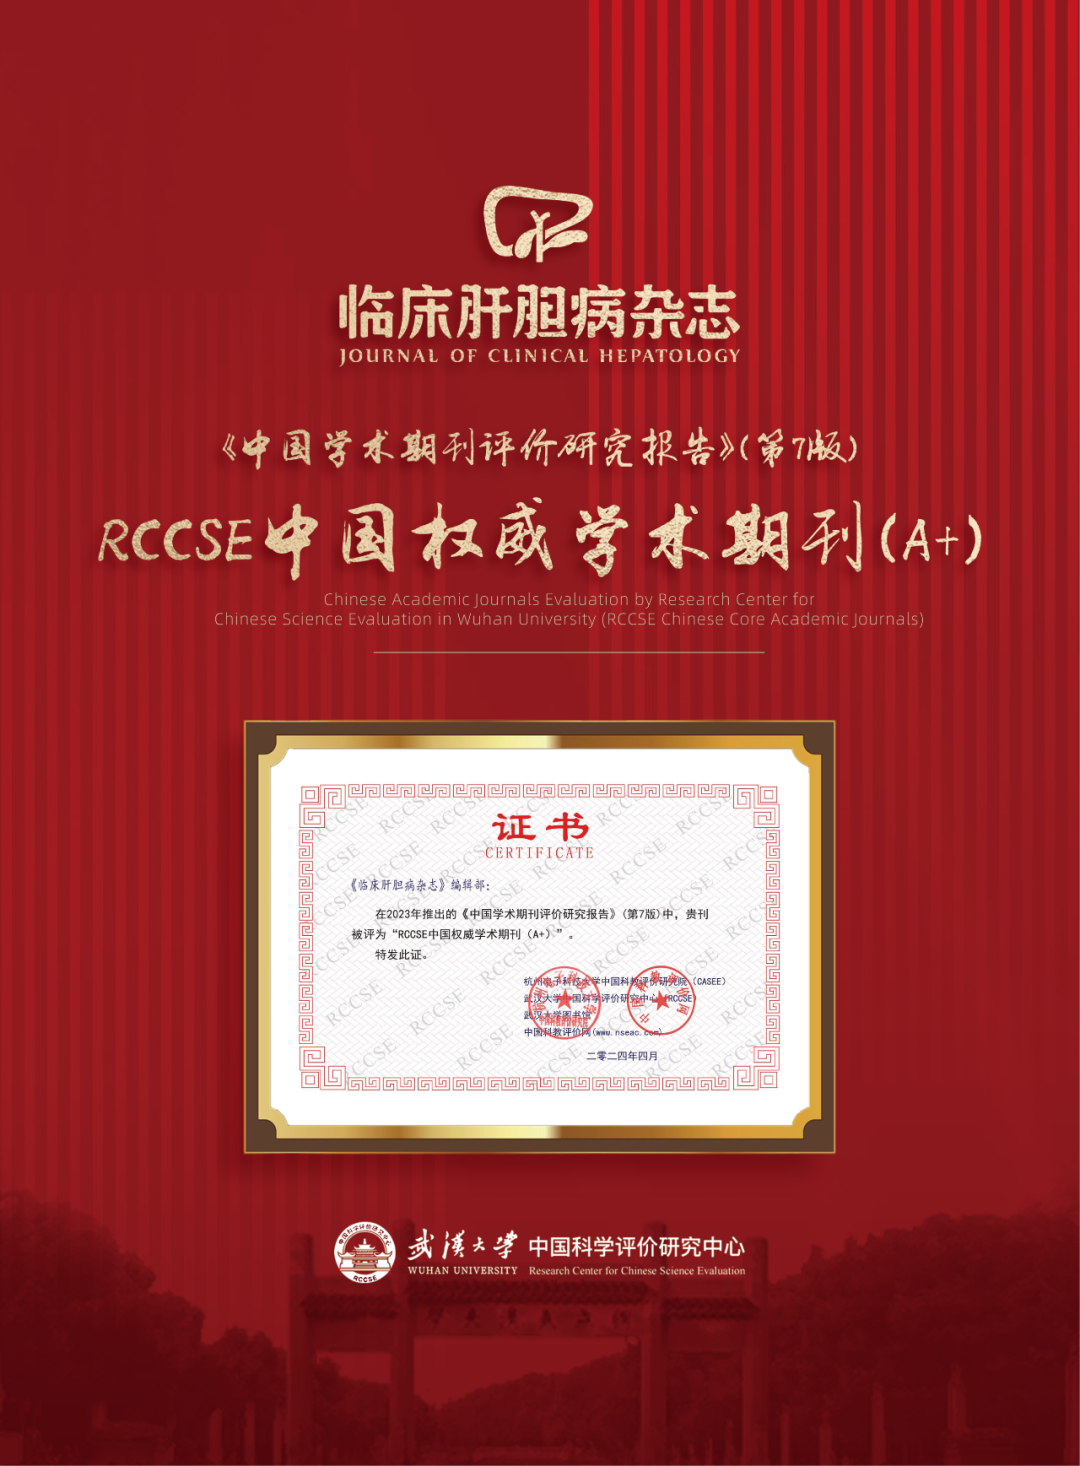 《临床肝胆病<font color="red">杂志</font>》获评“RCCSE中国权威学术期刊（A+）”